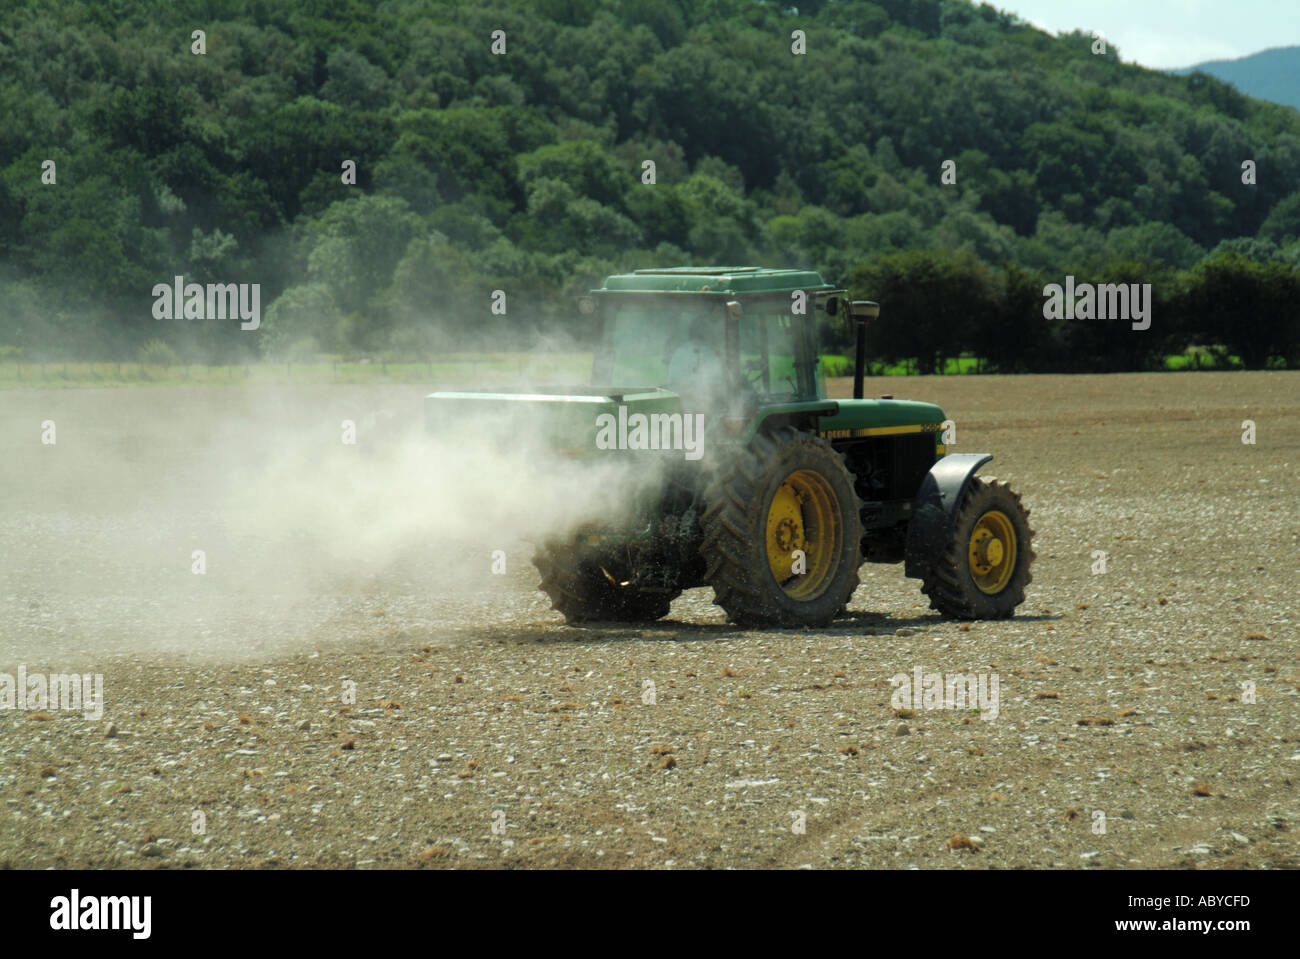 Landwirt treibende John Deere Traktor mit Streuer Anlage Verbreitung staubigen landwirtschaftliche Kalk auf Feld-Hof in der Nähe von Machynlleth Powys in Wales Großbritannien Landwirtschaft Stockfoto